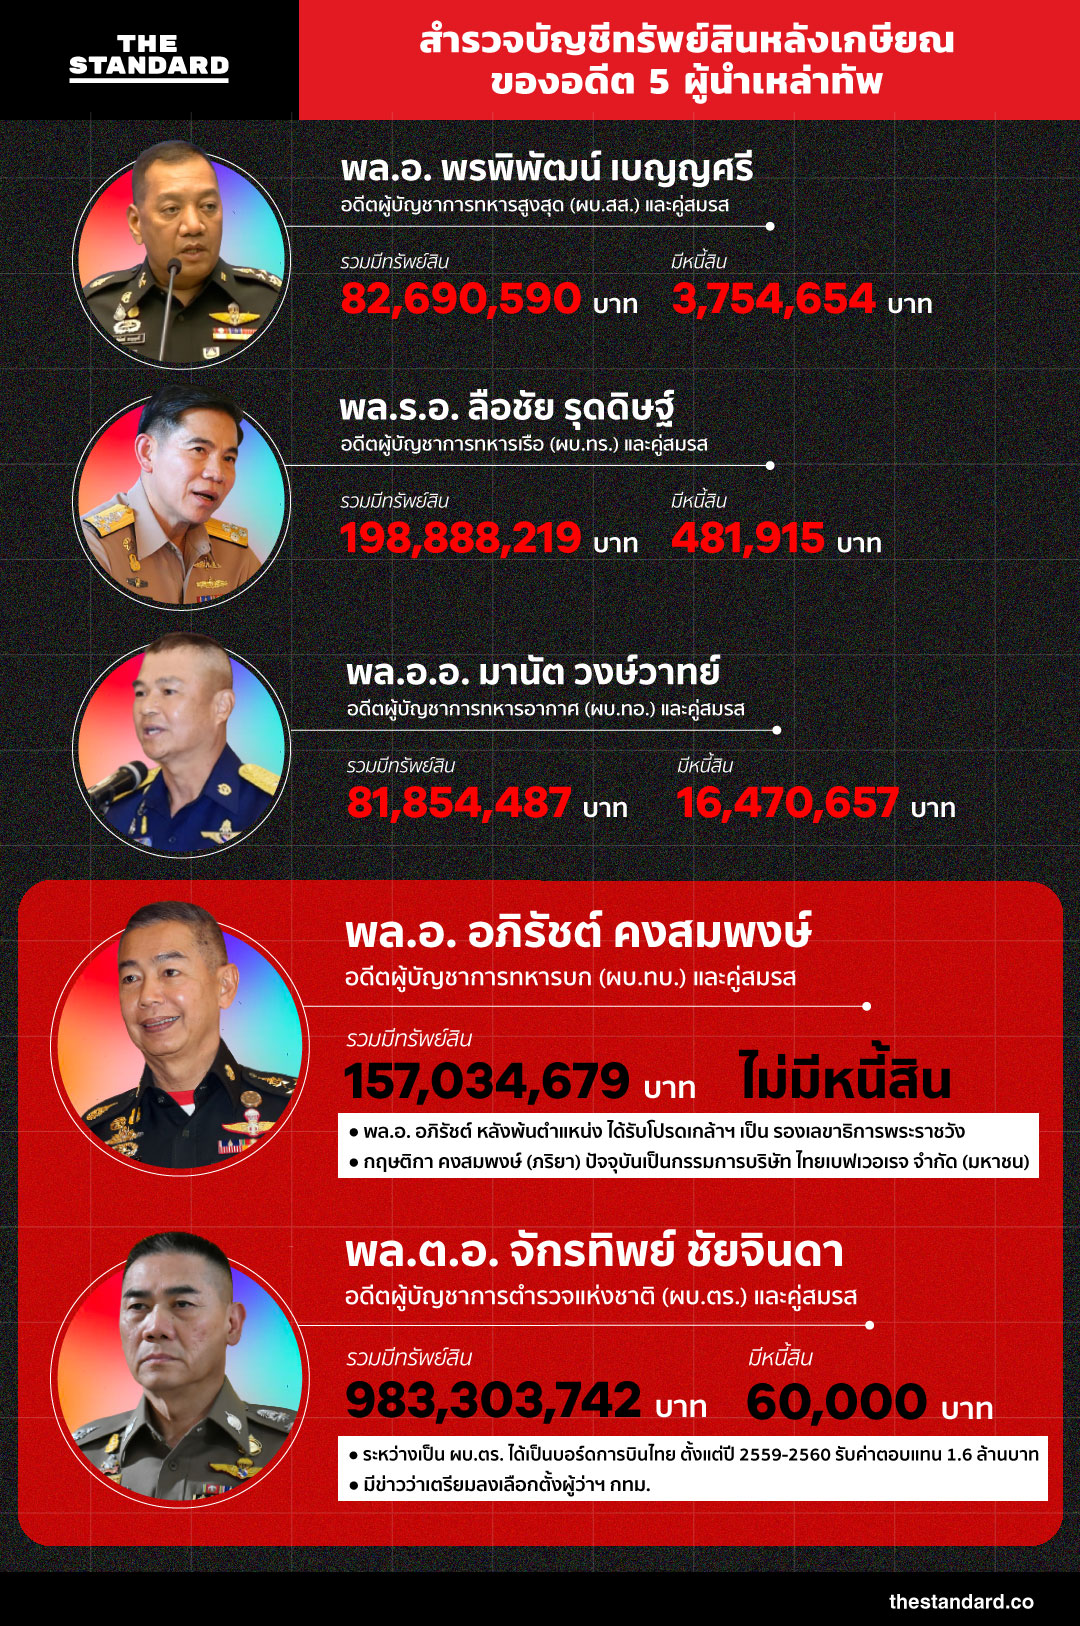 บัญชีทรัพย์สินหลังเกษียณของอดีต 5 ผู้นำเหล่าทัพ ในตาราง infographic